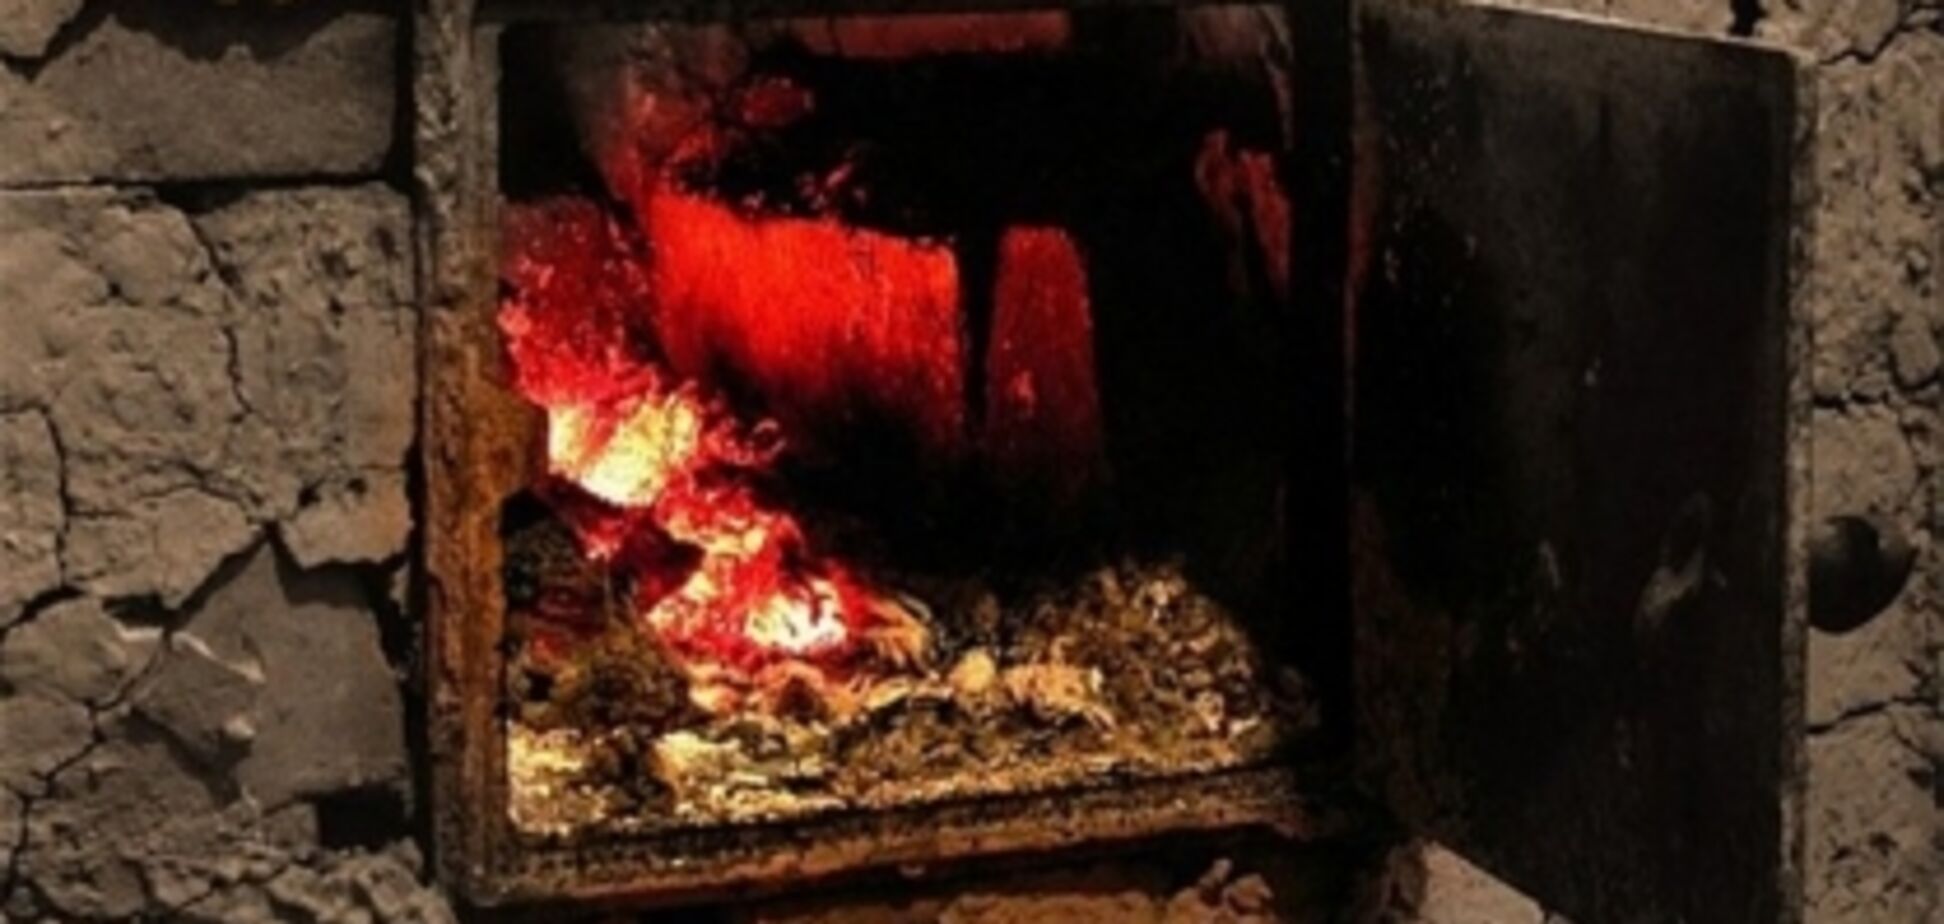 Обвуглене тіло знайшли в печі: в Росії дідусь із бабусею заживо спалили однорічного онука